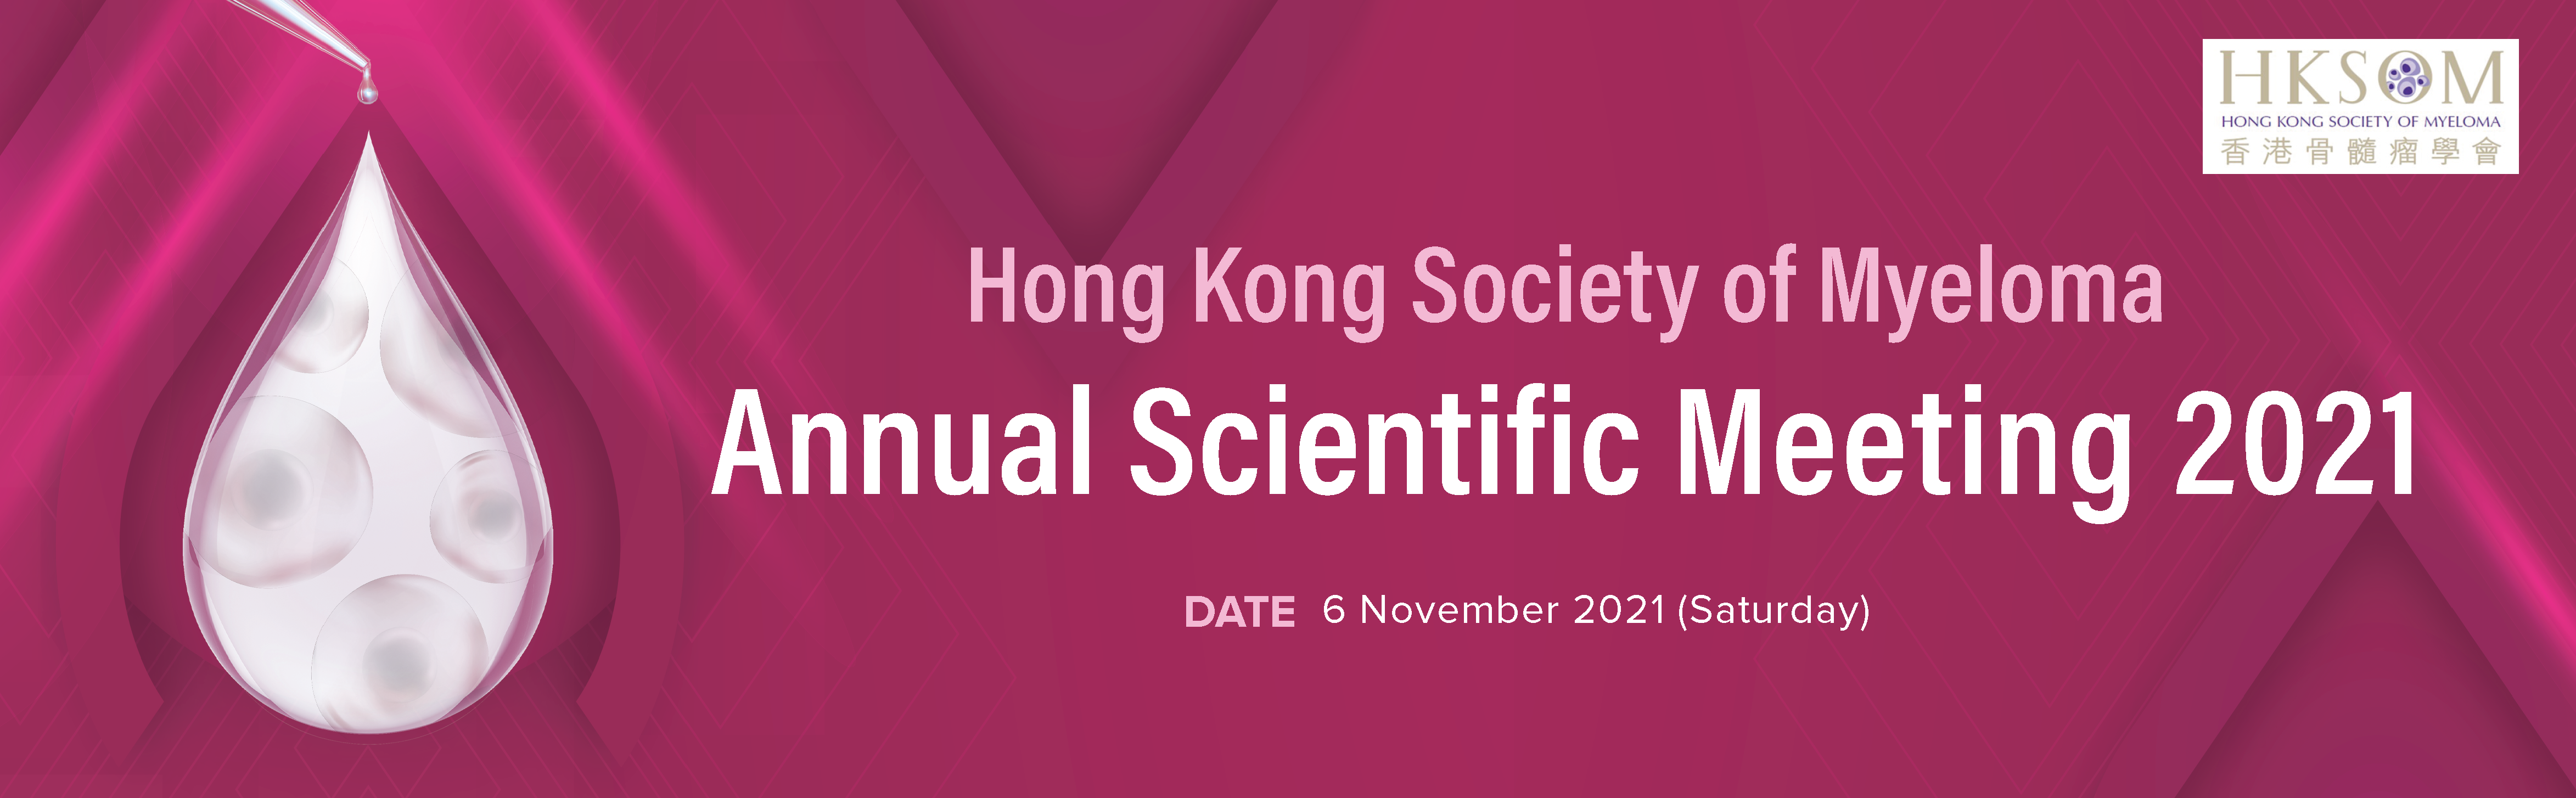 Annual Scientific Meeting 2021